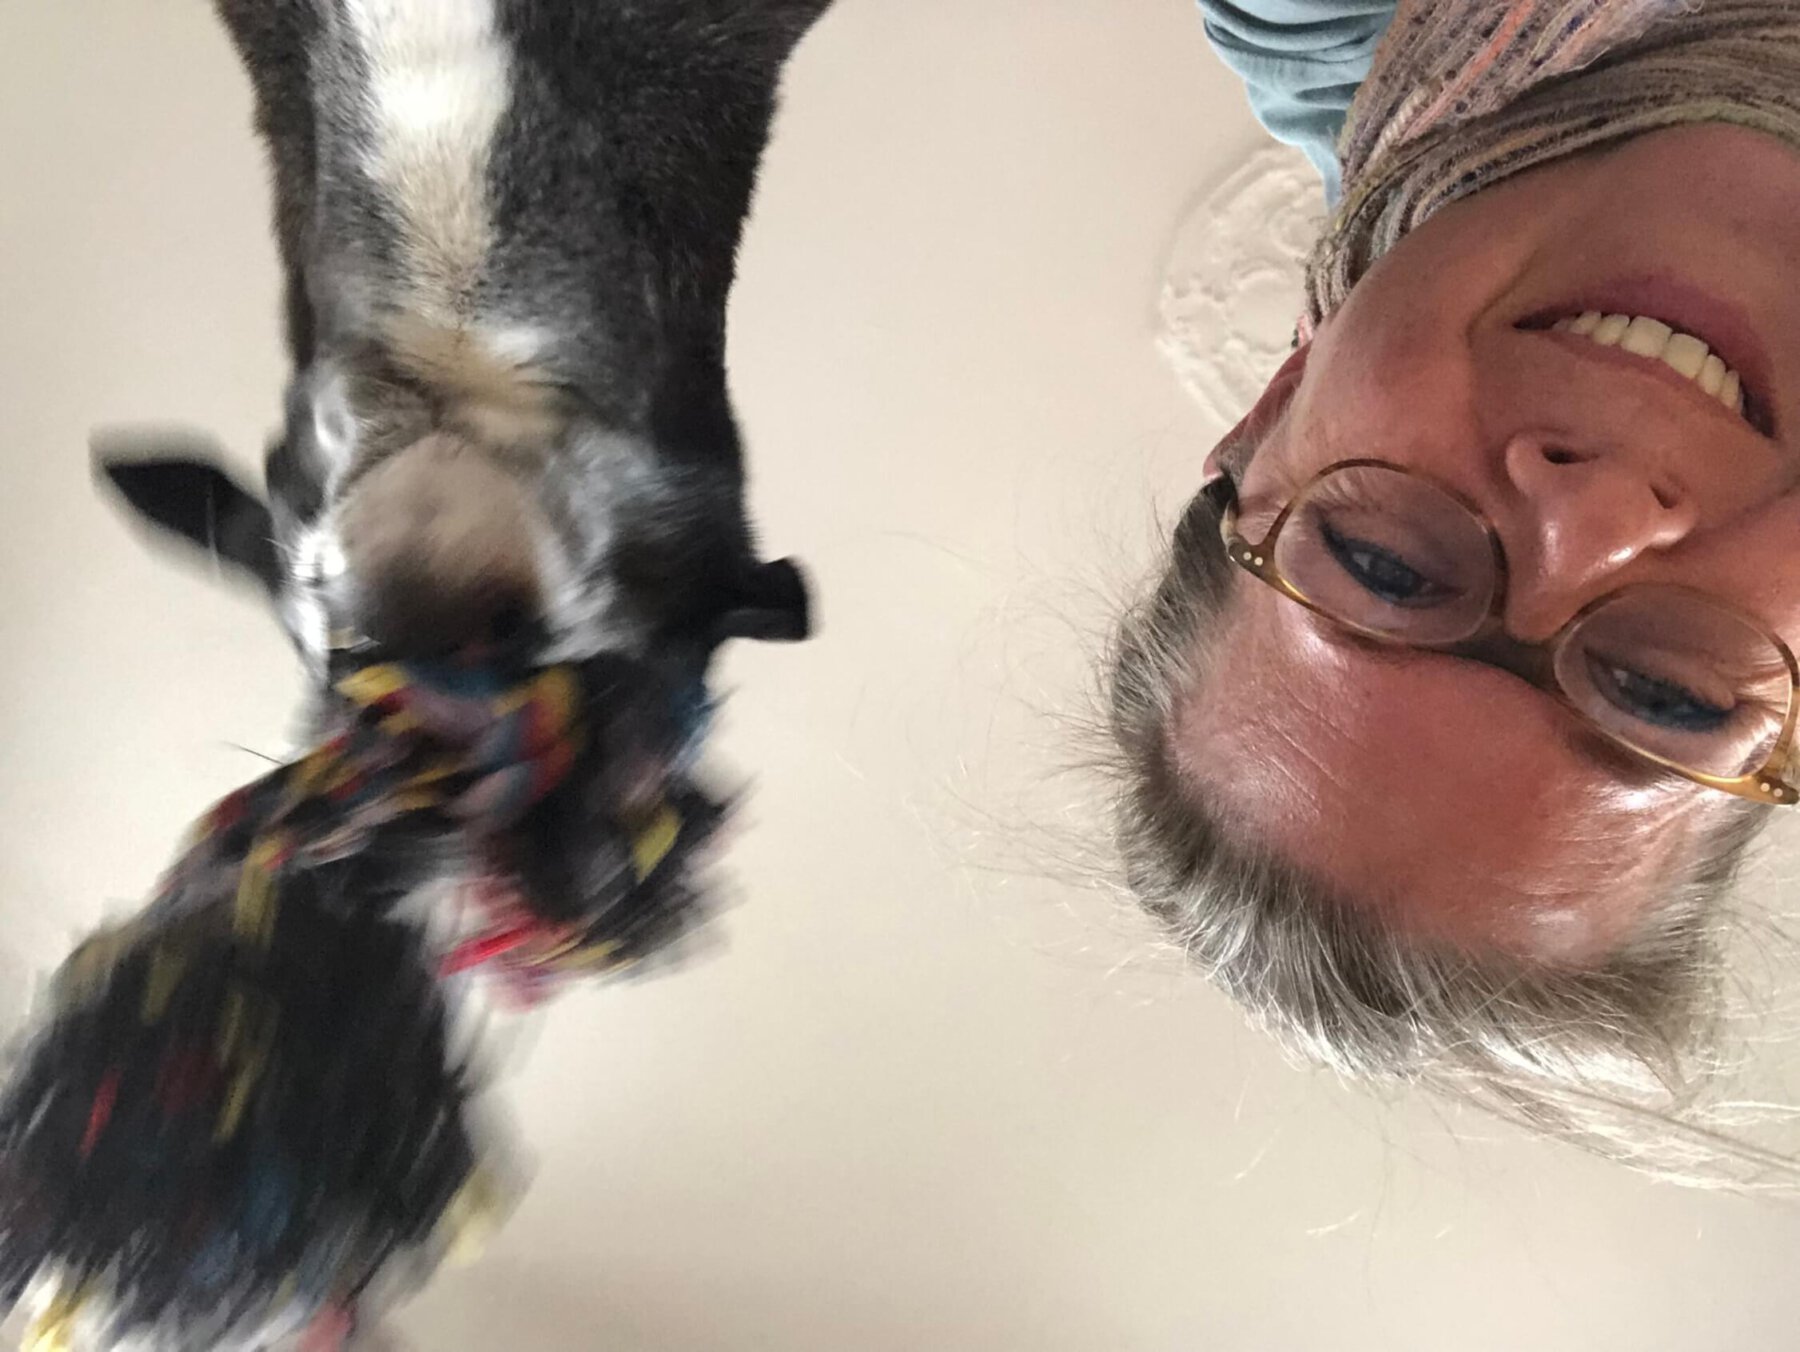 Hund mit Seil im Maul und Frau lachend von unten über Kopf fotografiert